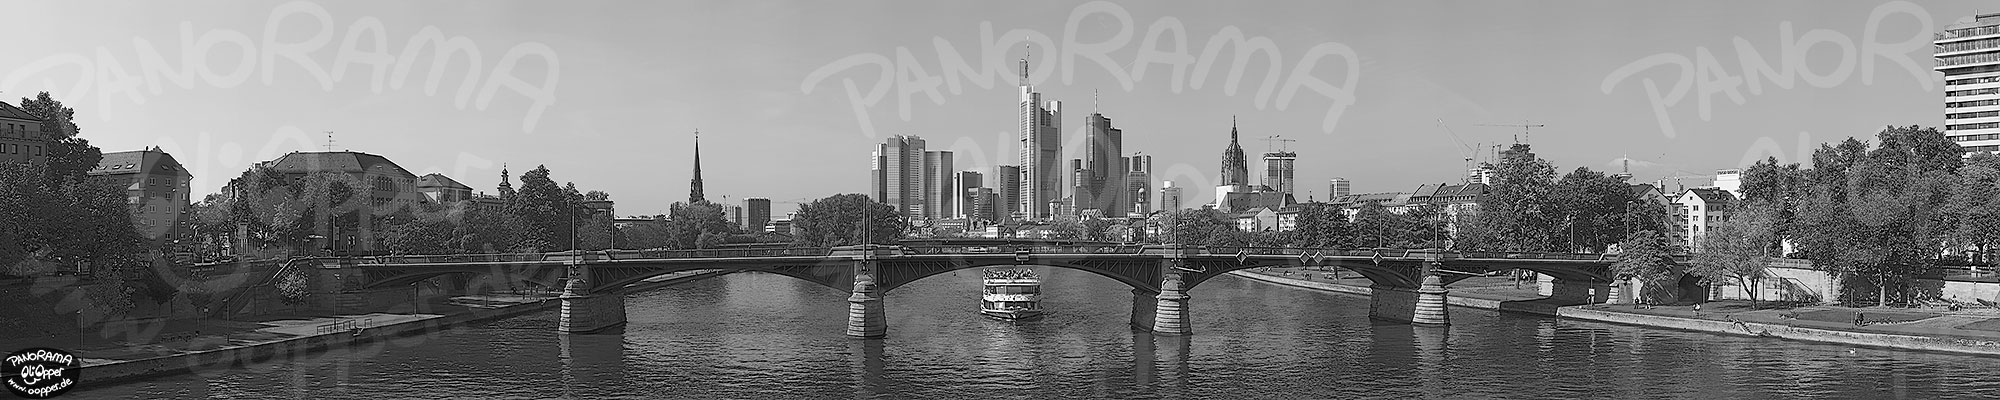 Frankfurt - schwarz/wei� - Tag - p8399 - (c) by Oliver Opper